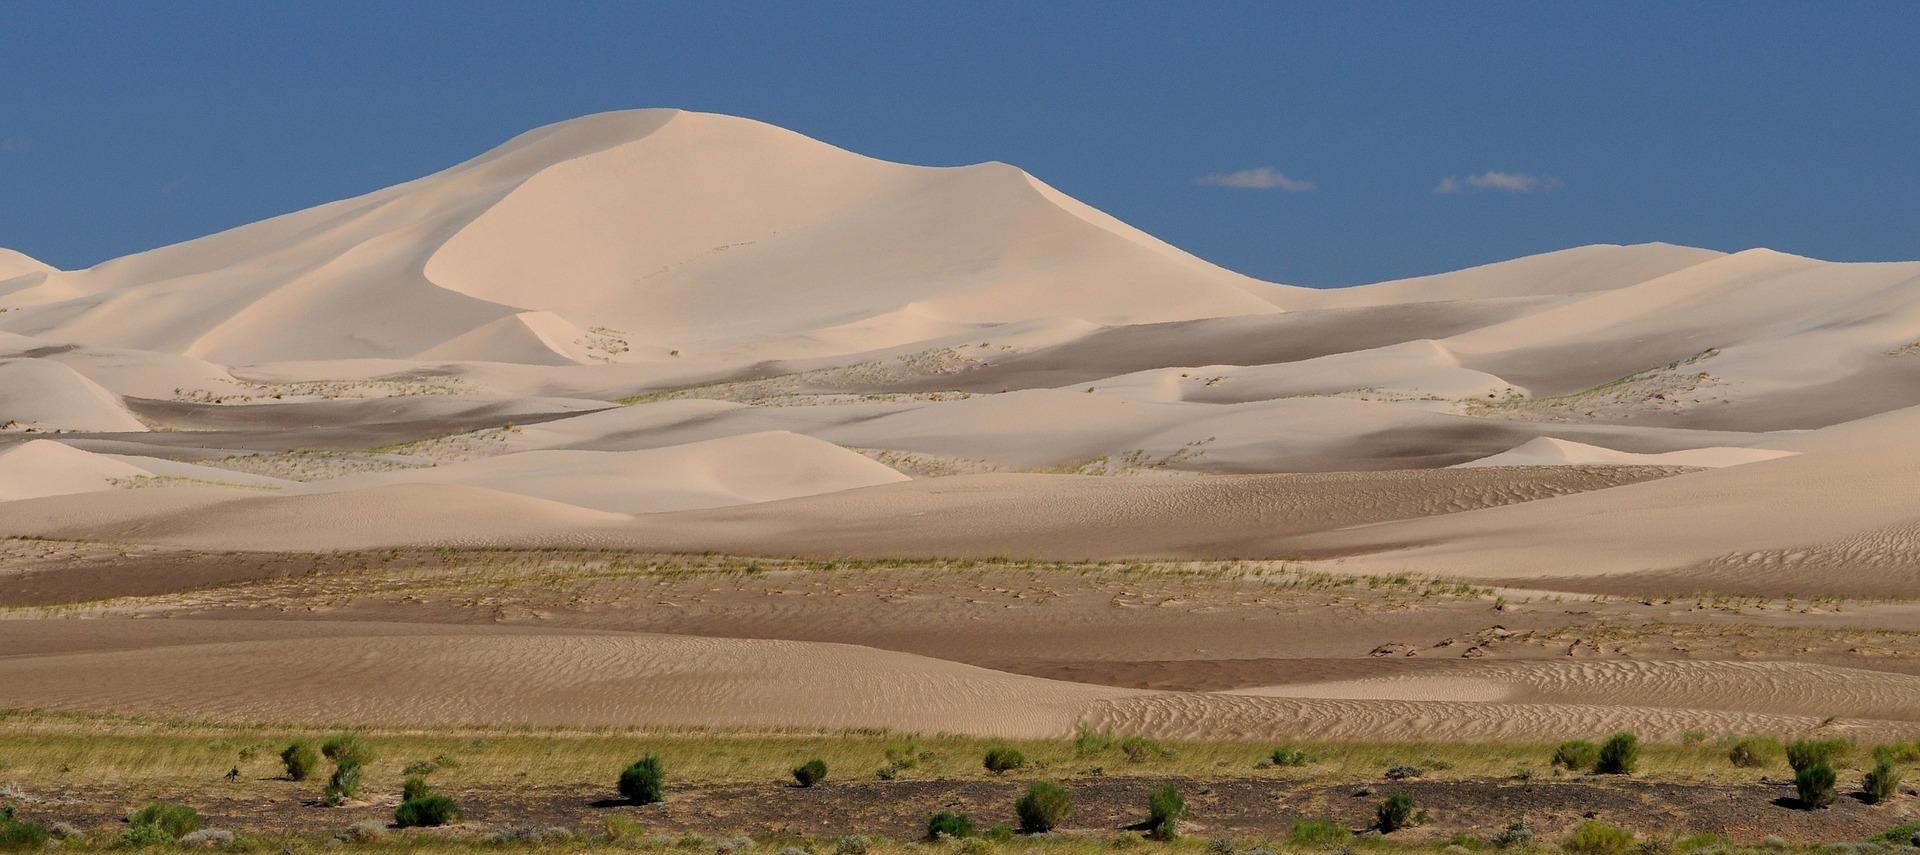 El desierto de Gobi, el más grande de Asia